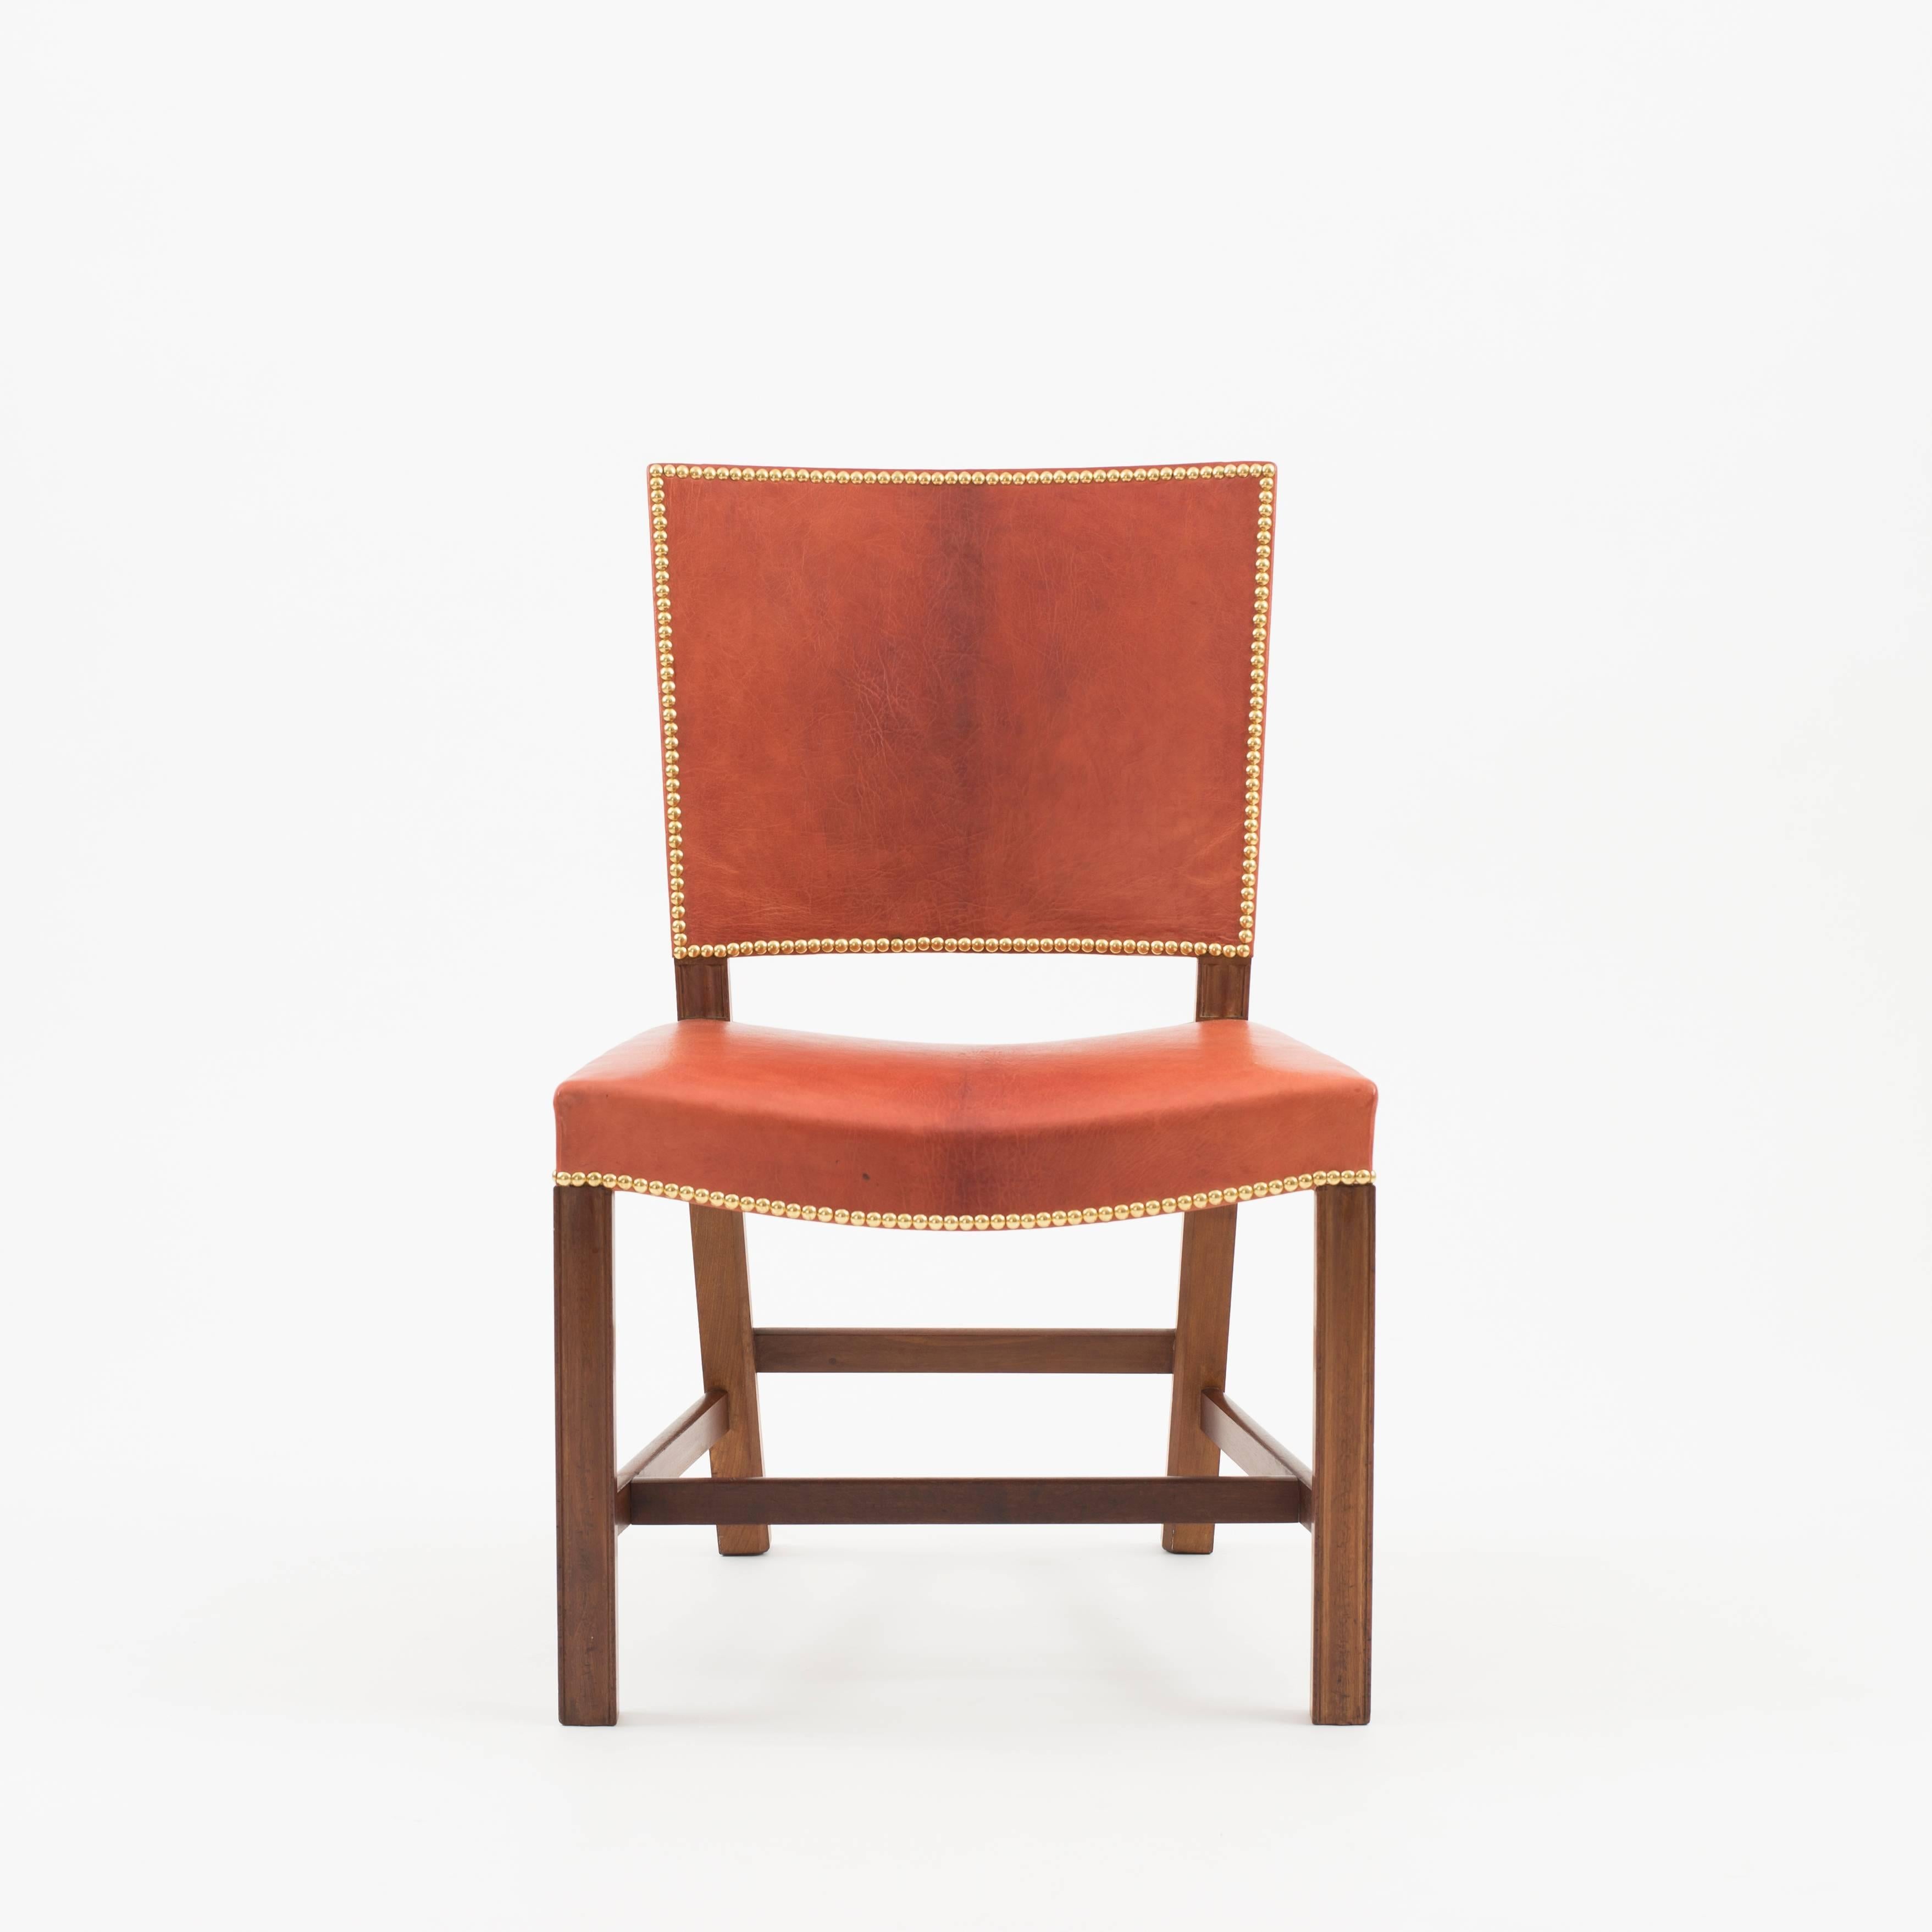 Kaare Klint 'Red Chair' en acajou cubain, cuir nigérien et clous en laiton. Exécuté par Rud. Rasmussen 1936-1940.

Face inférieure avec l'étiquette en papier du fabricant RUD. RASMUSSENS/SNEDKERIER/45 NØRREBROGAD/KØBENHAVN, numéro au crayon et